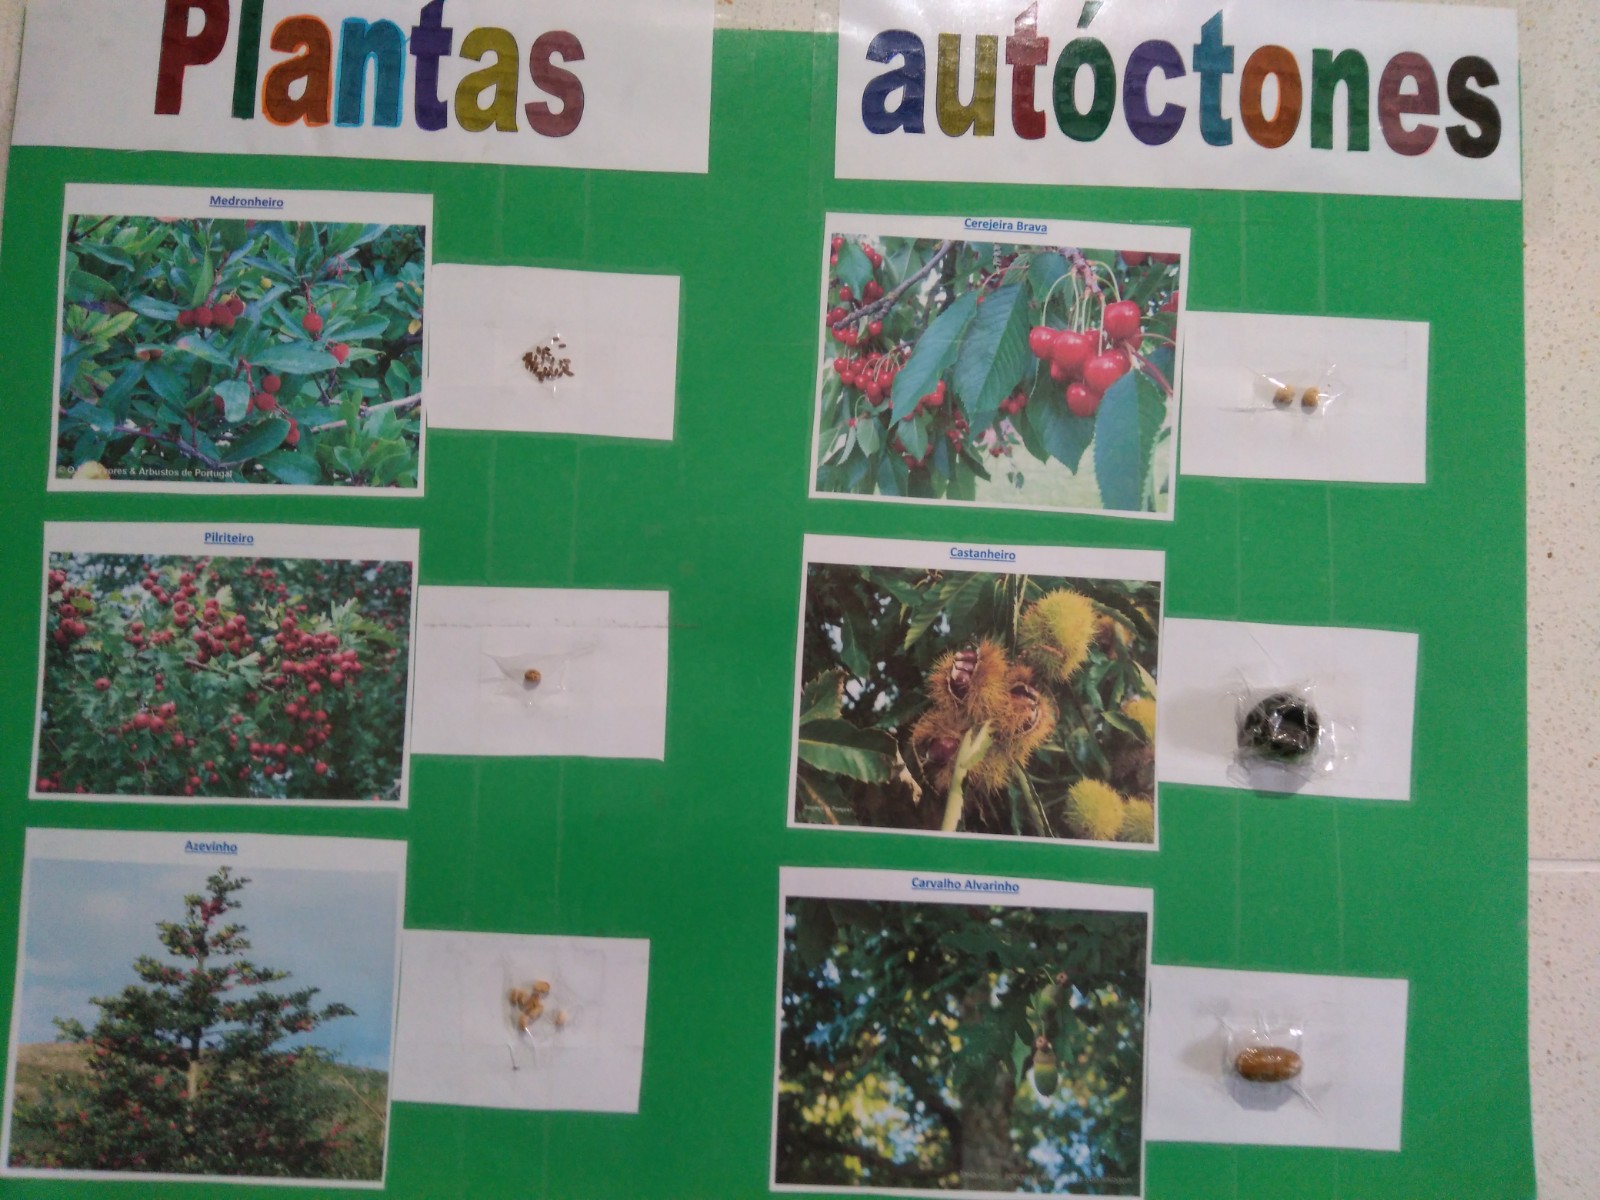 apresentação das diversas sementes aos alunos e breve explicação de cada uma das espécies